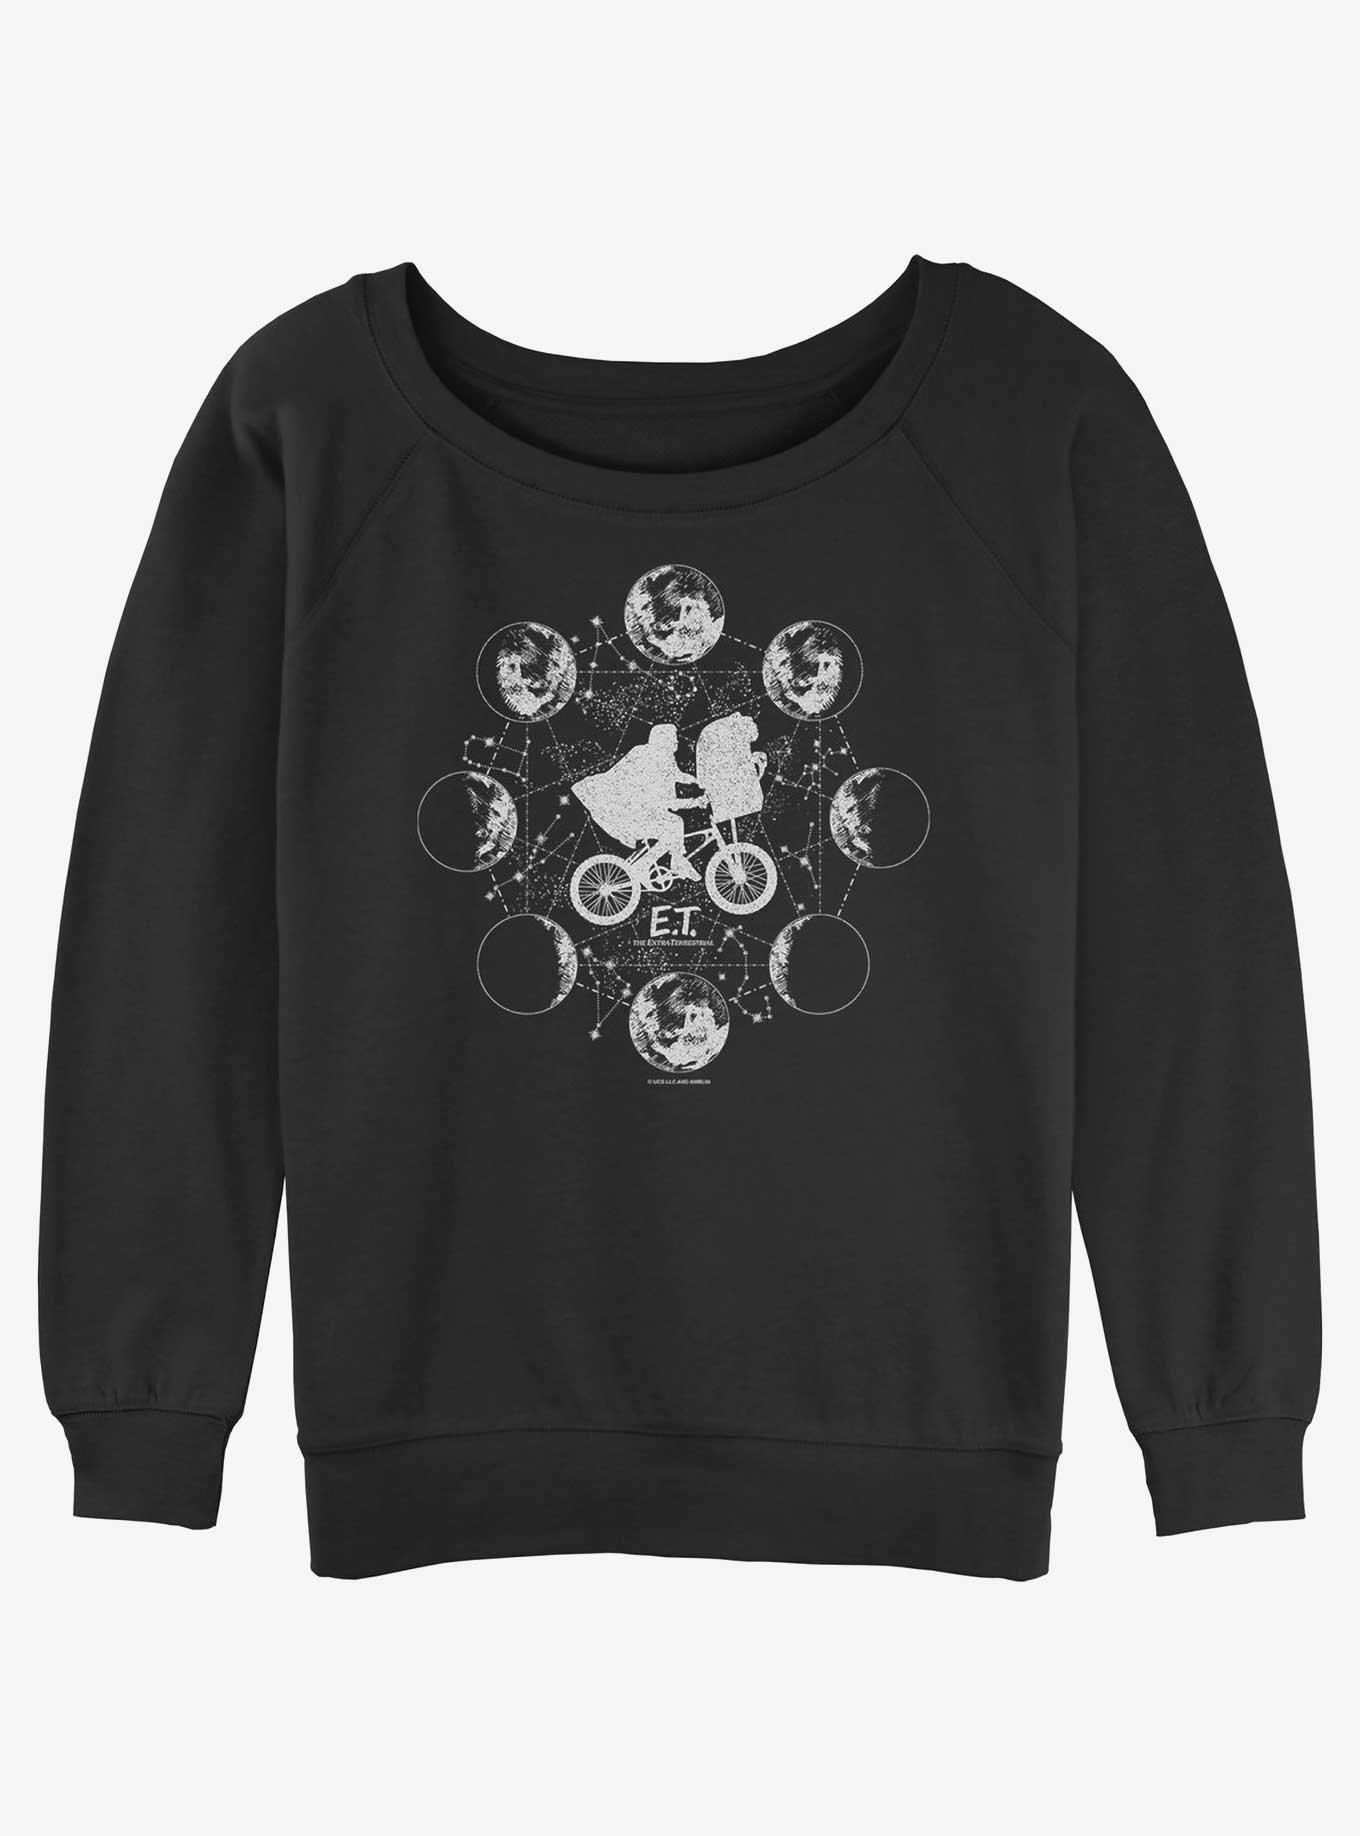 E.T. Lunar Girls Slouchy Sweatshirt